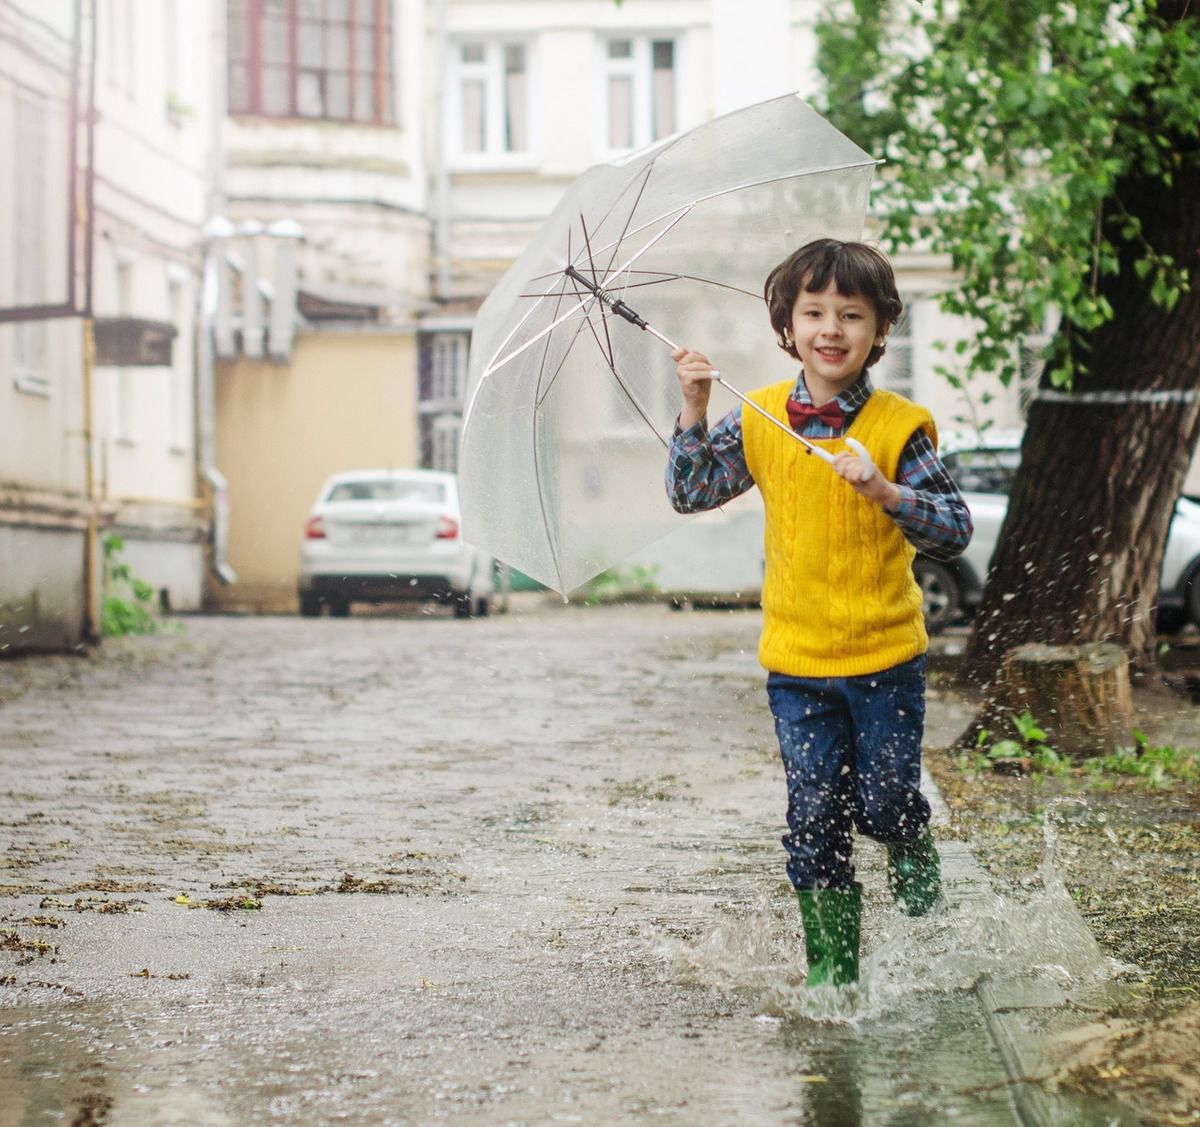 Прогноз погоди в Україні на 29 квітня 2019: похолодання, дощ, гроза. Синоптики прогнозують дощі та похолодання в Україні з понеділка.